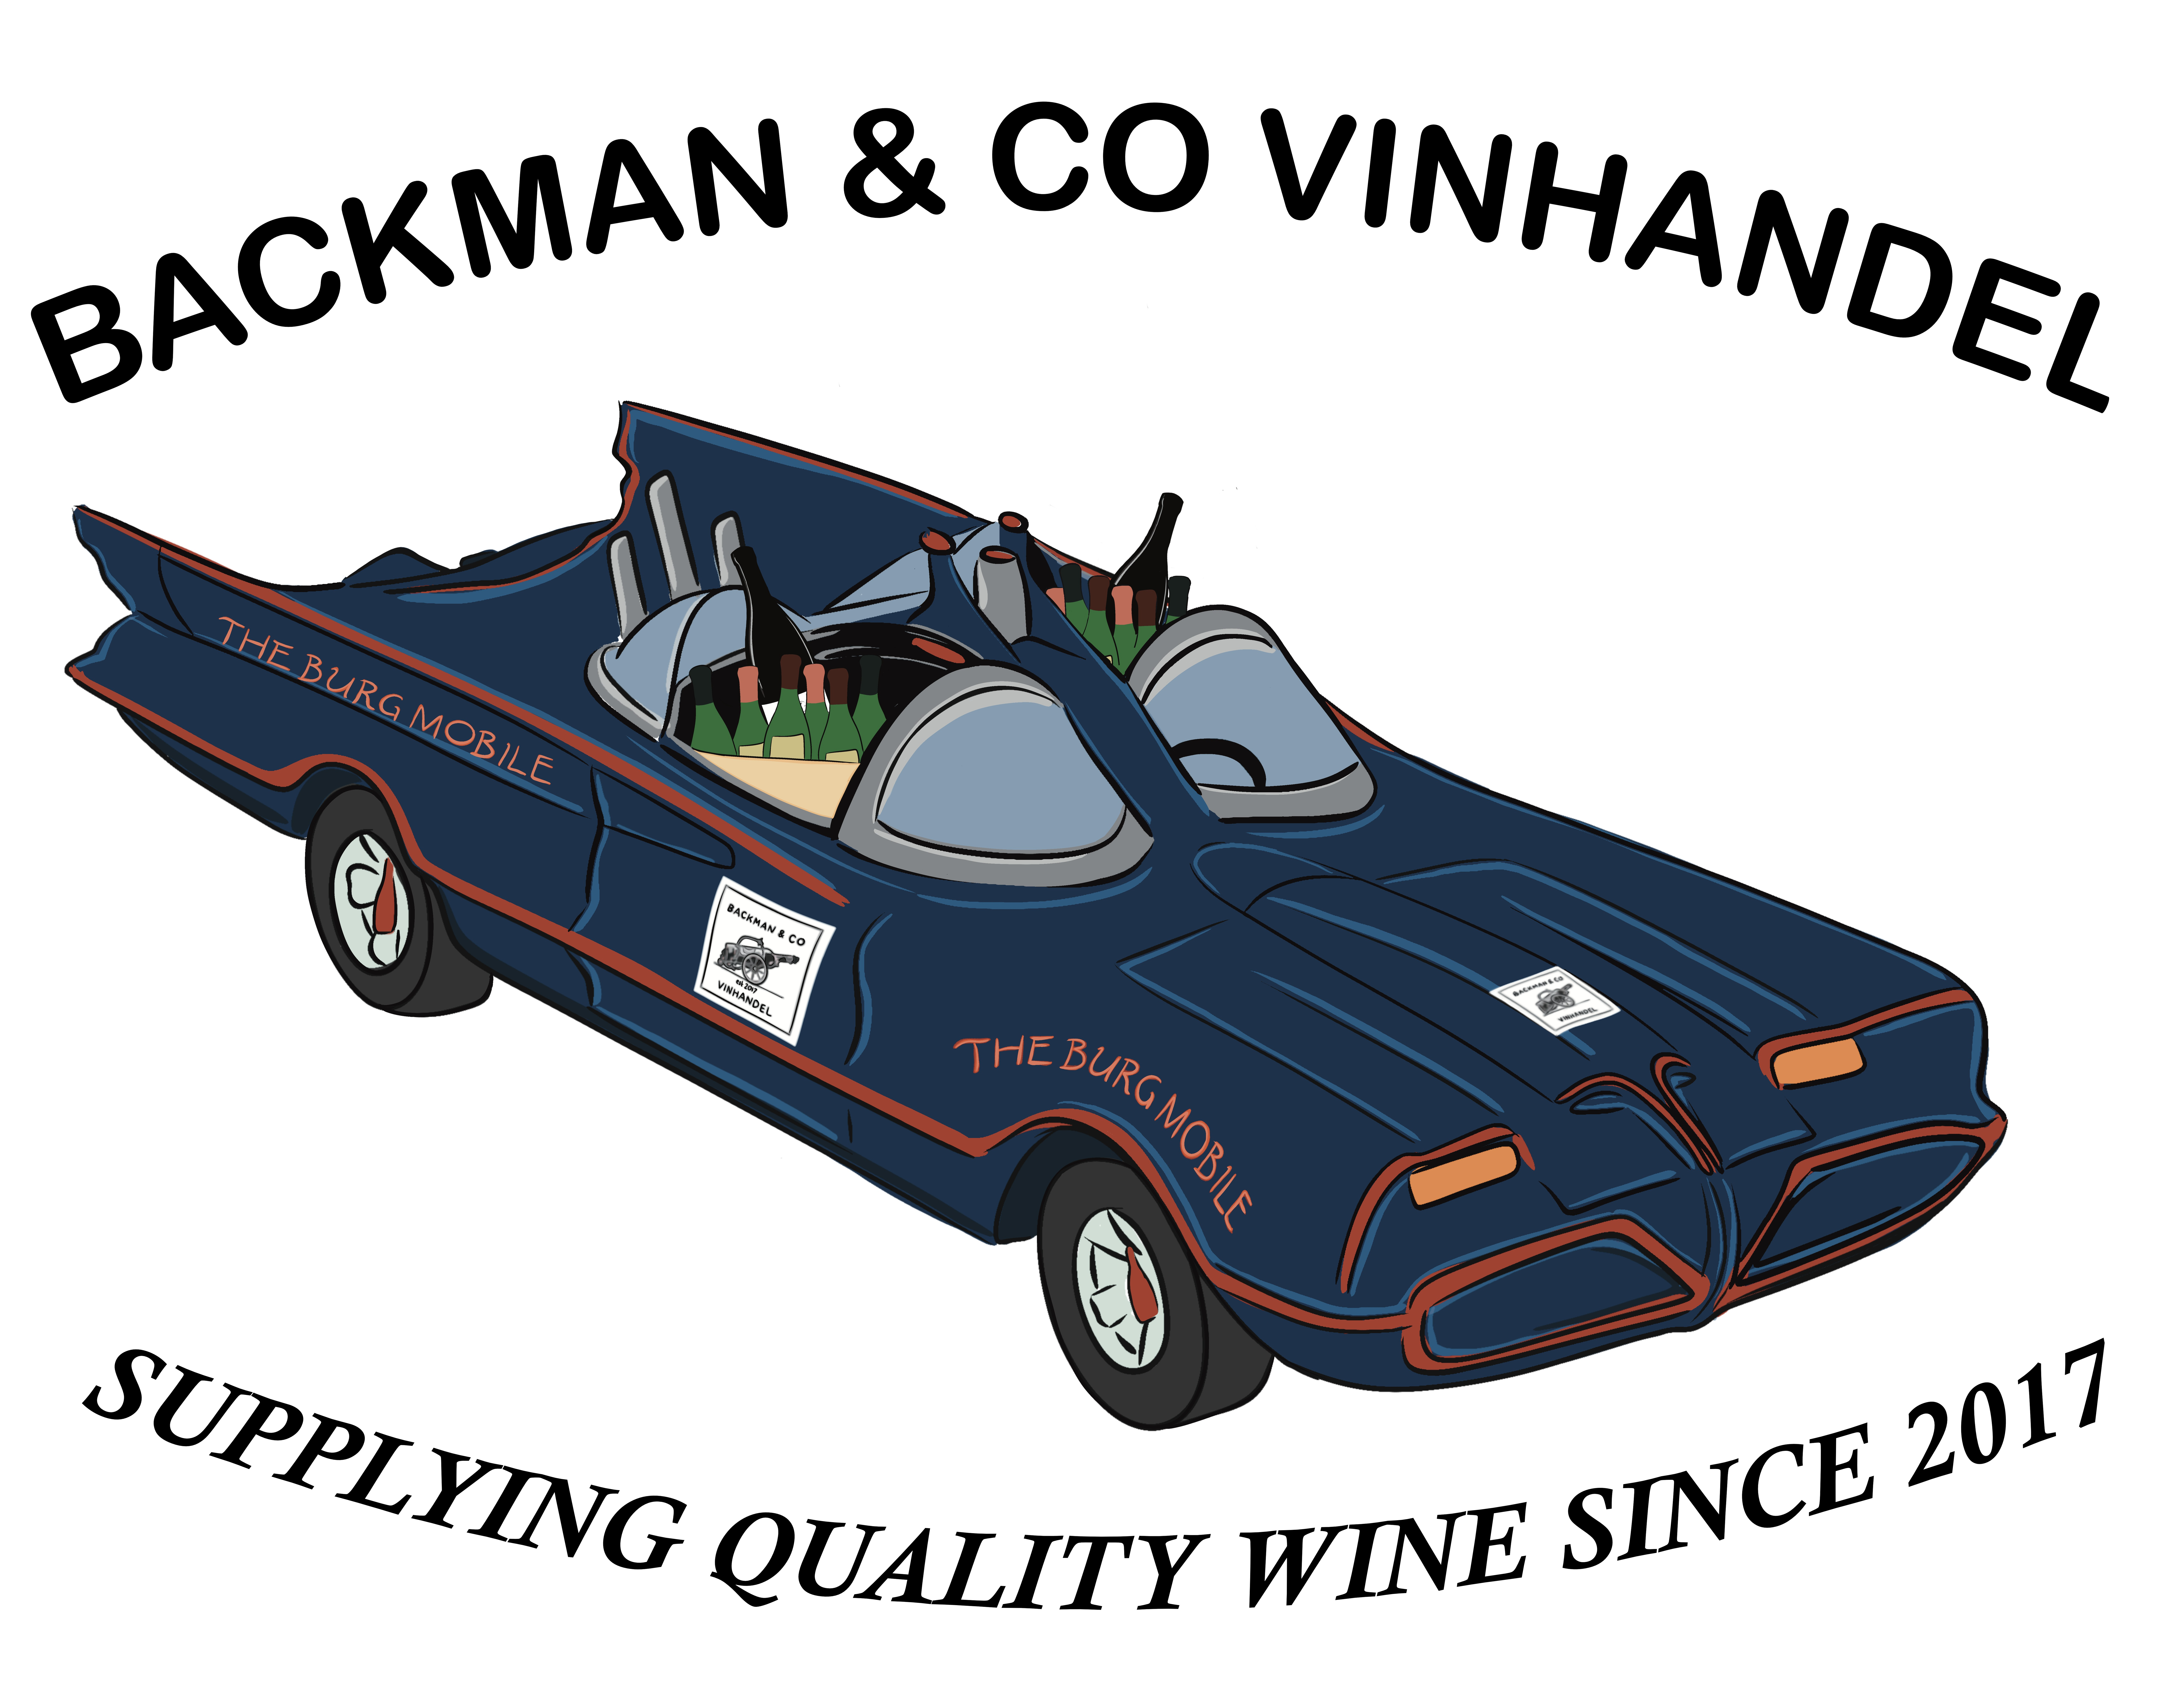 Backman & Co Vinhandel